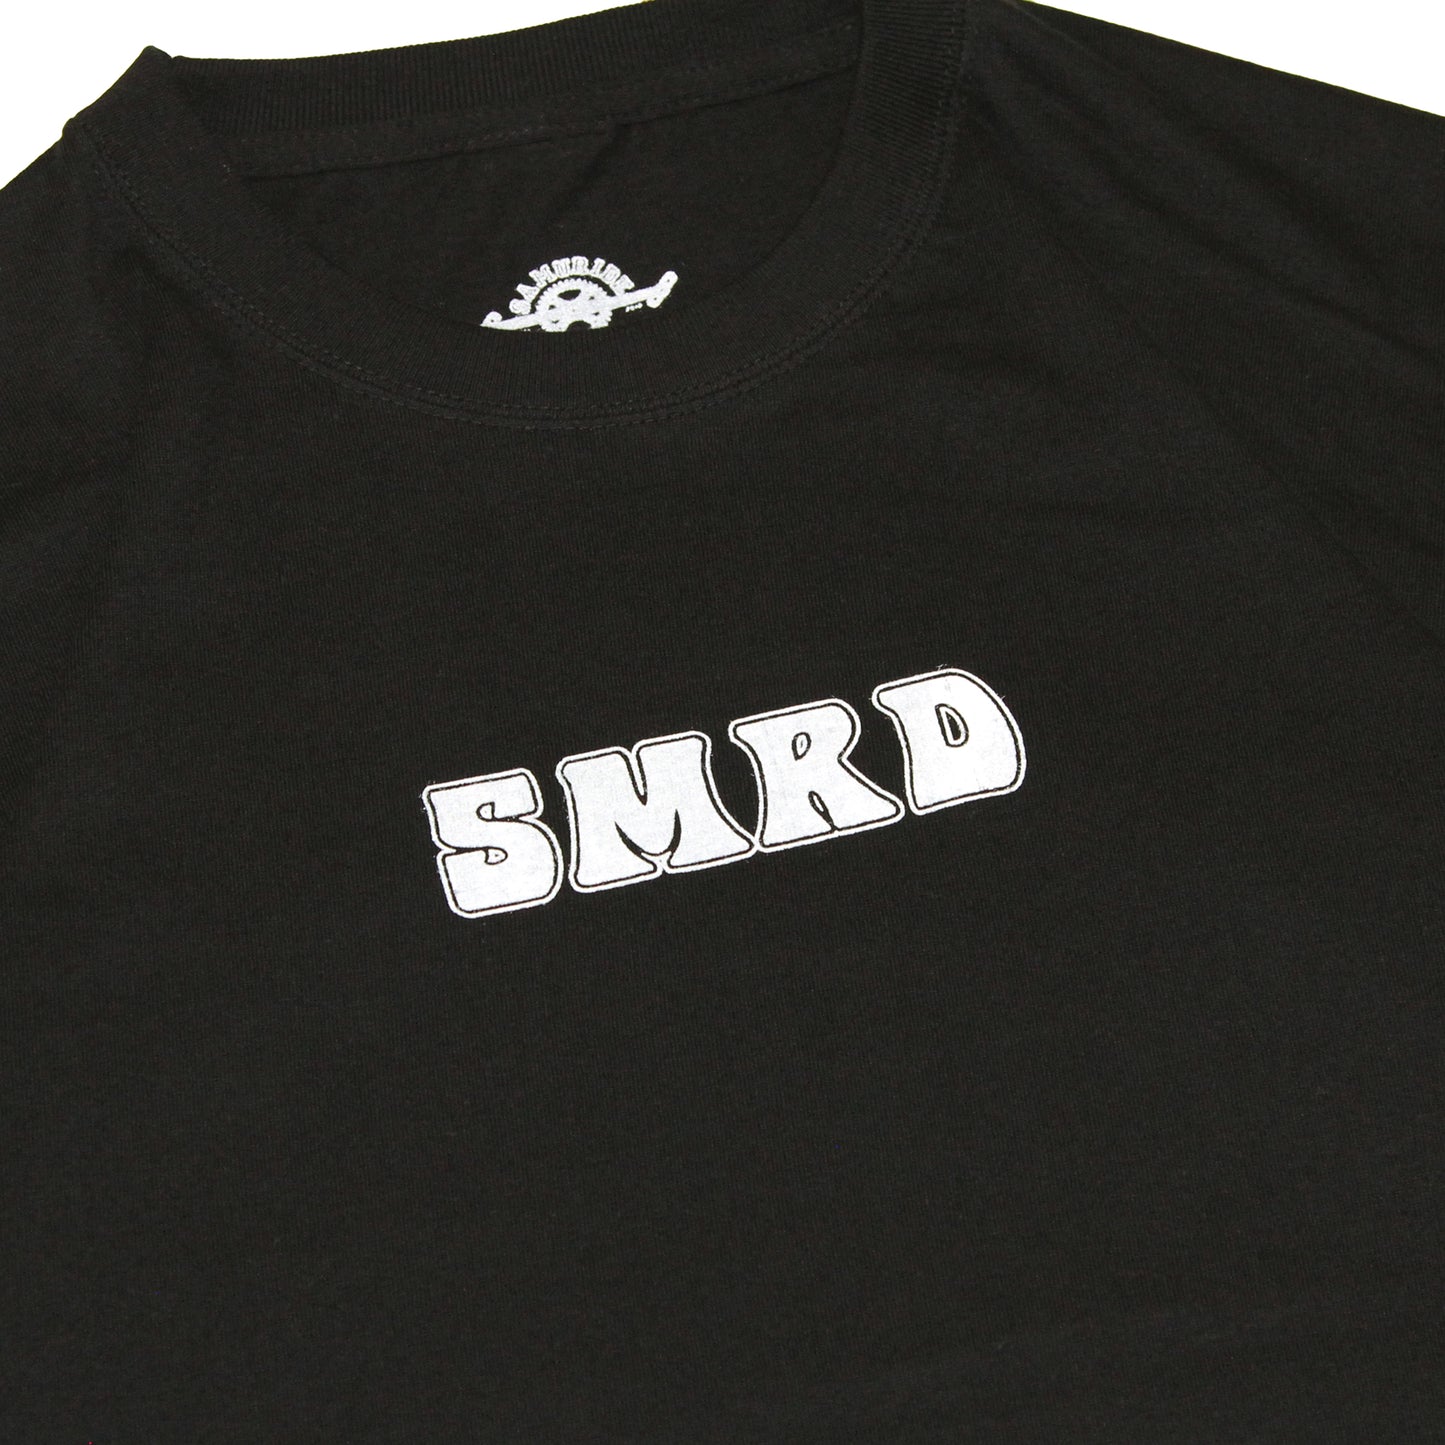 SAMURIDE - SMRD 70s Ride T-Shirt/Black & White